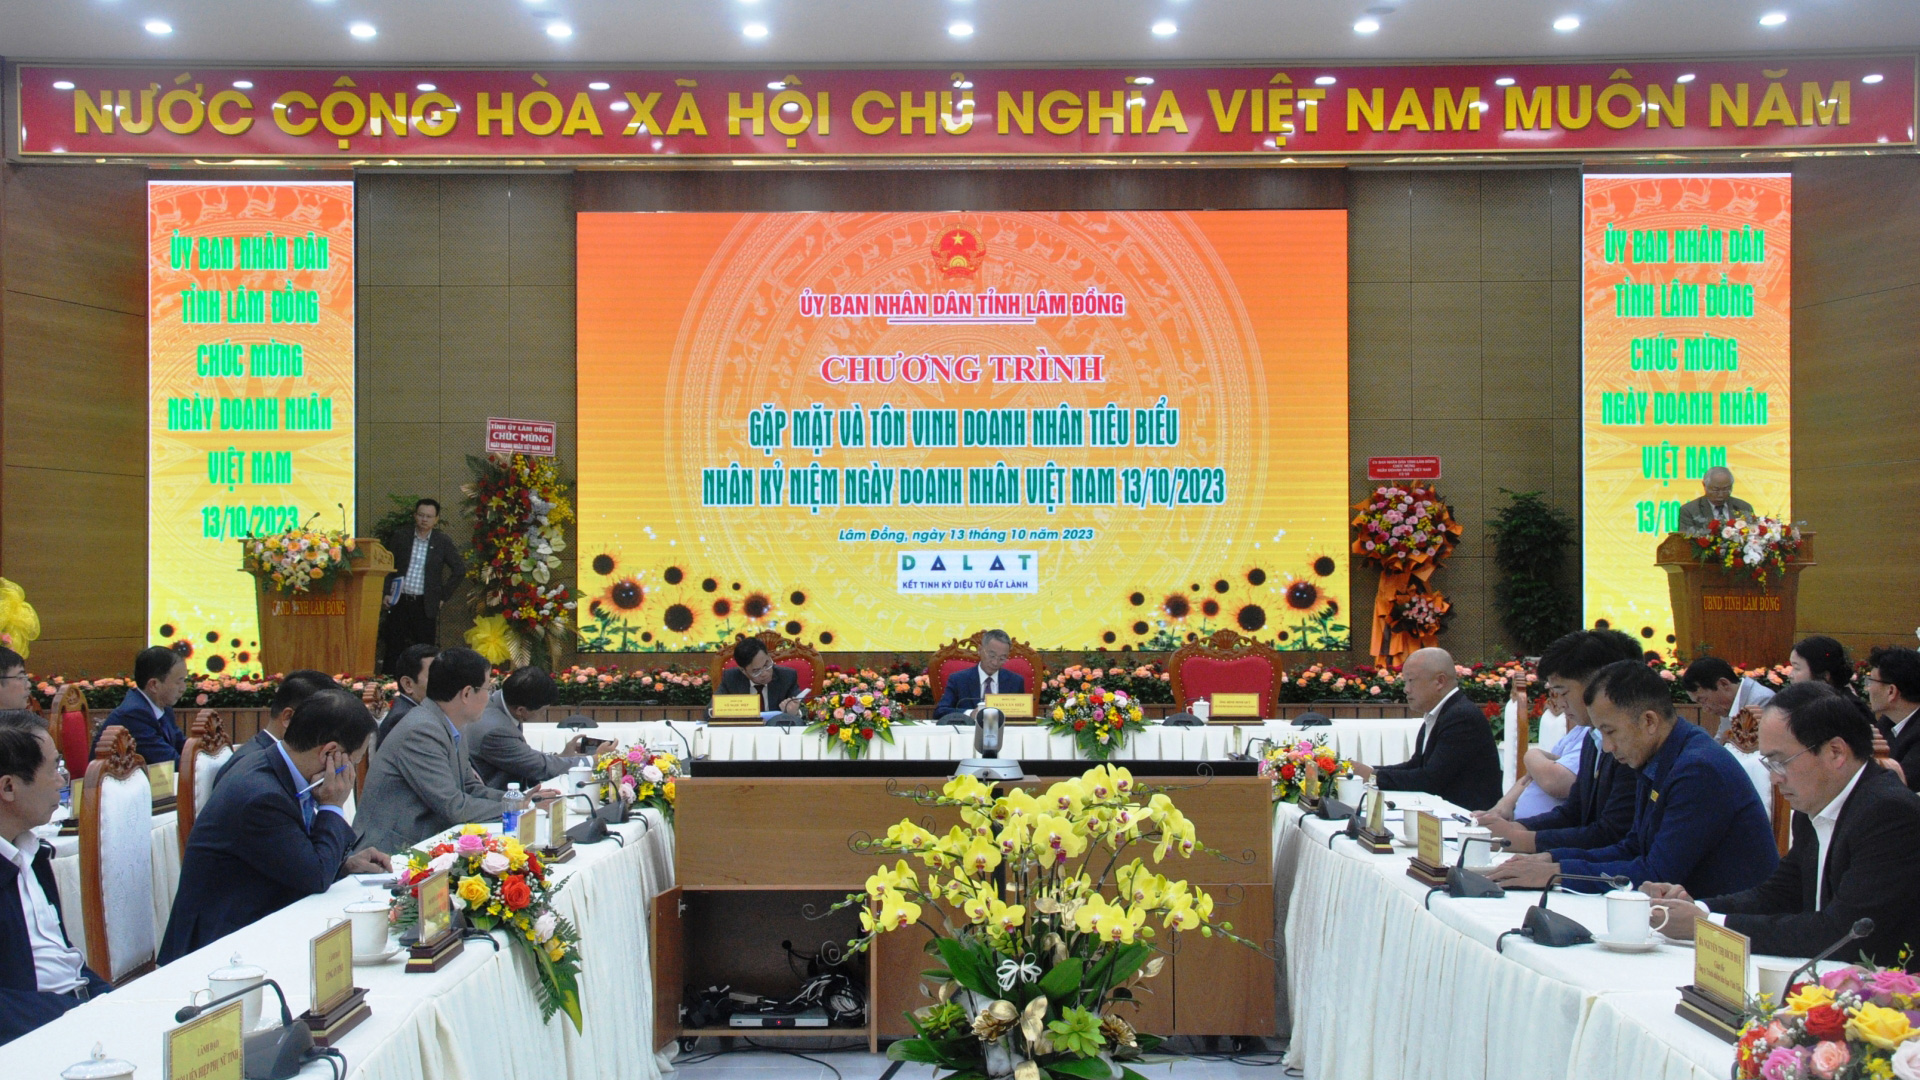 Gặp mặt và tôn vinh doanh nhân tiêu biểu nhân kỷ niệm Ngày Doanh nhân Việt Nam